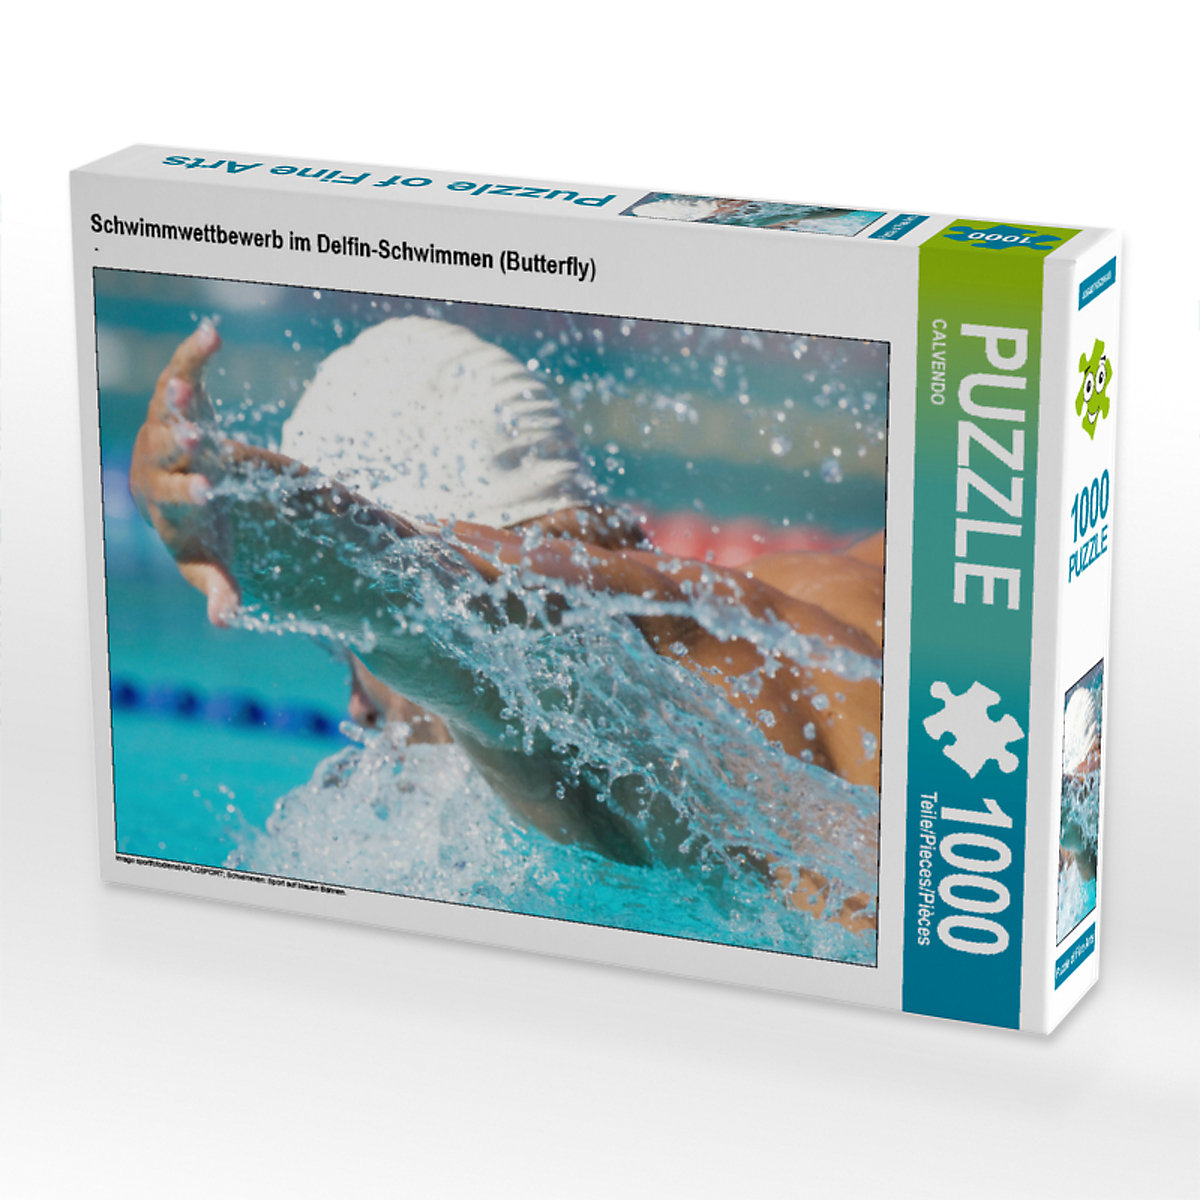 CALVENDO® Puzzle CALVENDO Puzzle Schwimmwettbewerb im Delfin-Schwimmen (Butterfly) 1000 Teile Foto-Puzzle für glückliche Stunden